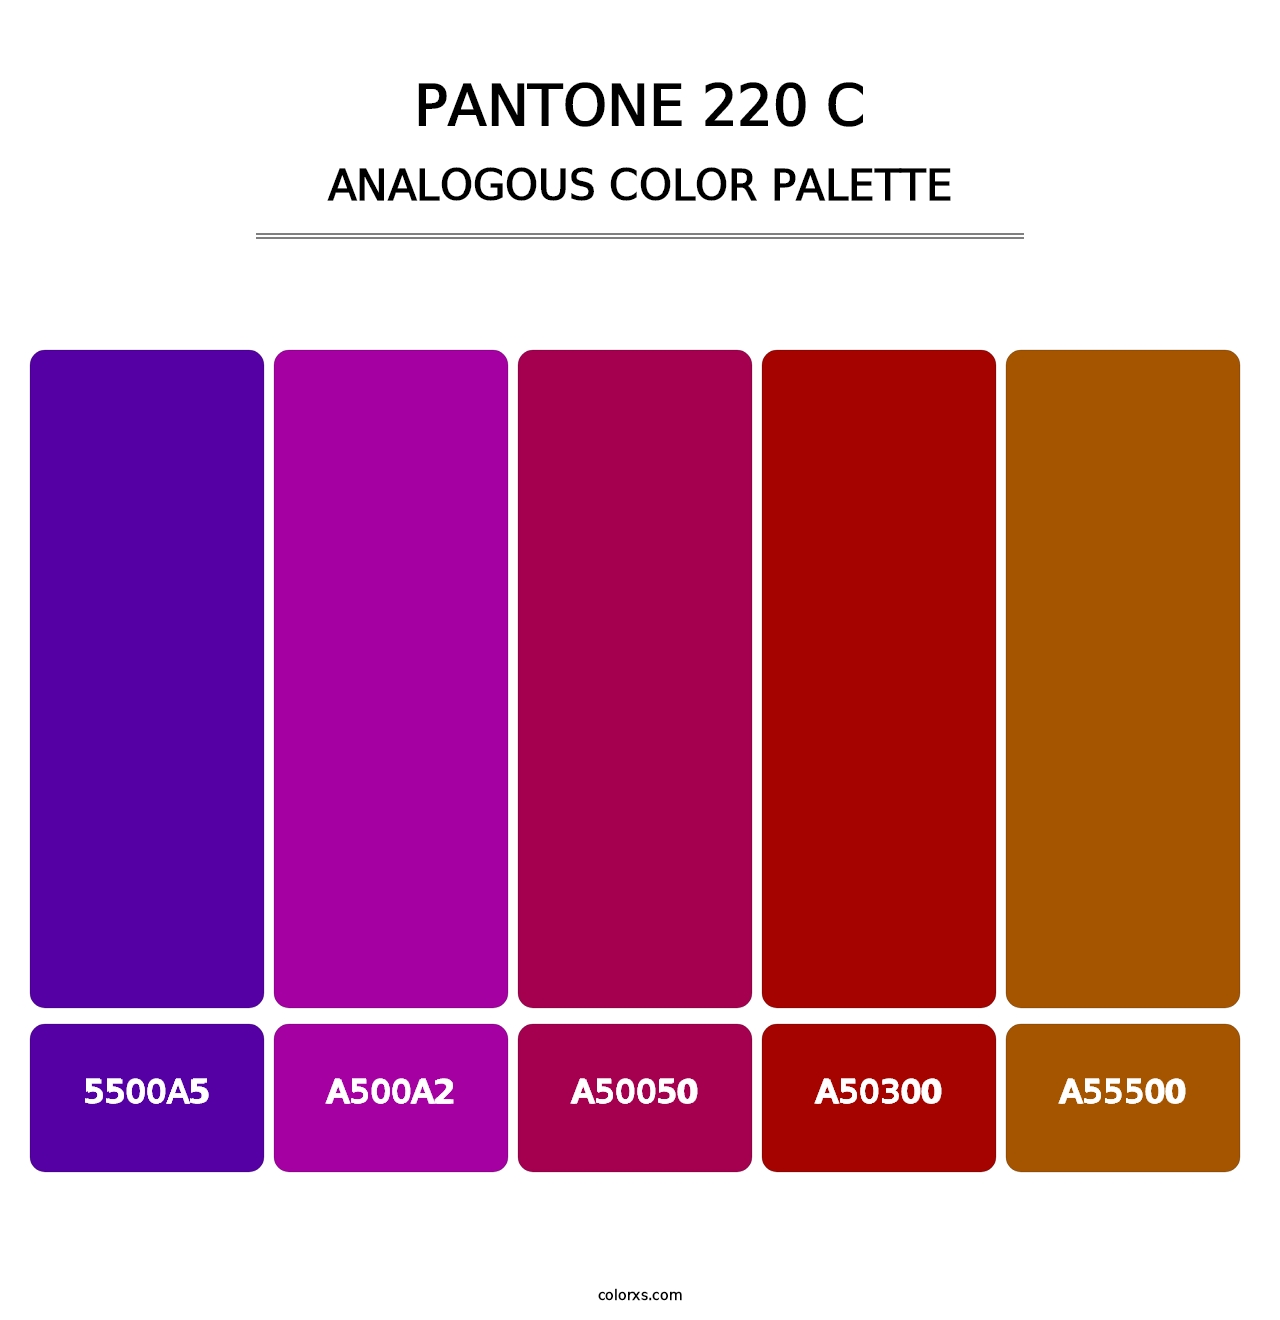 PANTONE 220 C - Analogous Color Palette